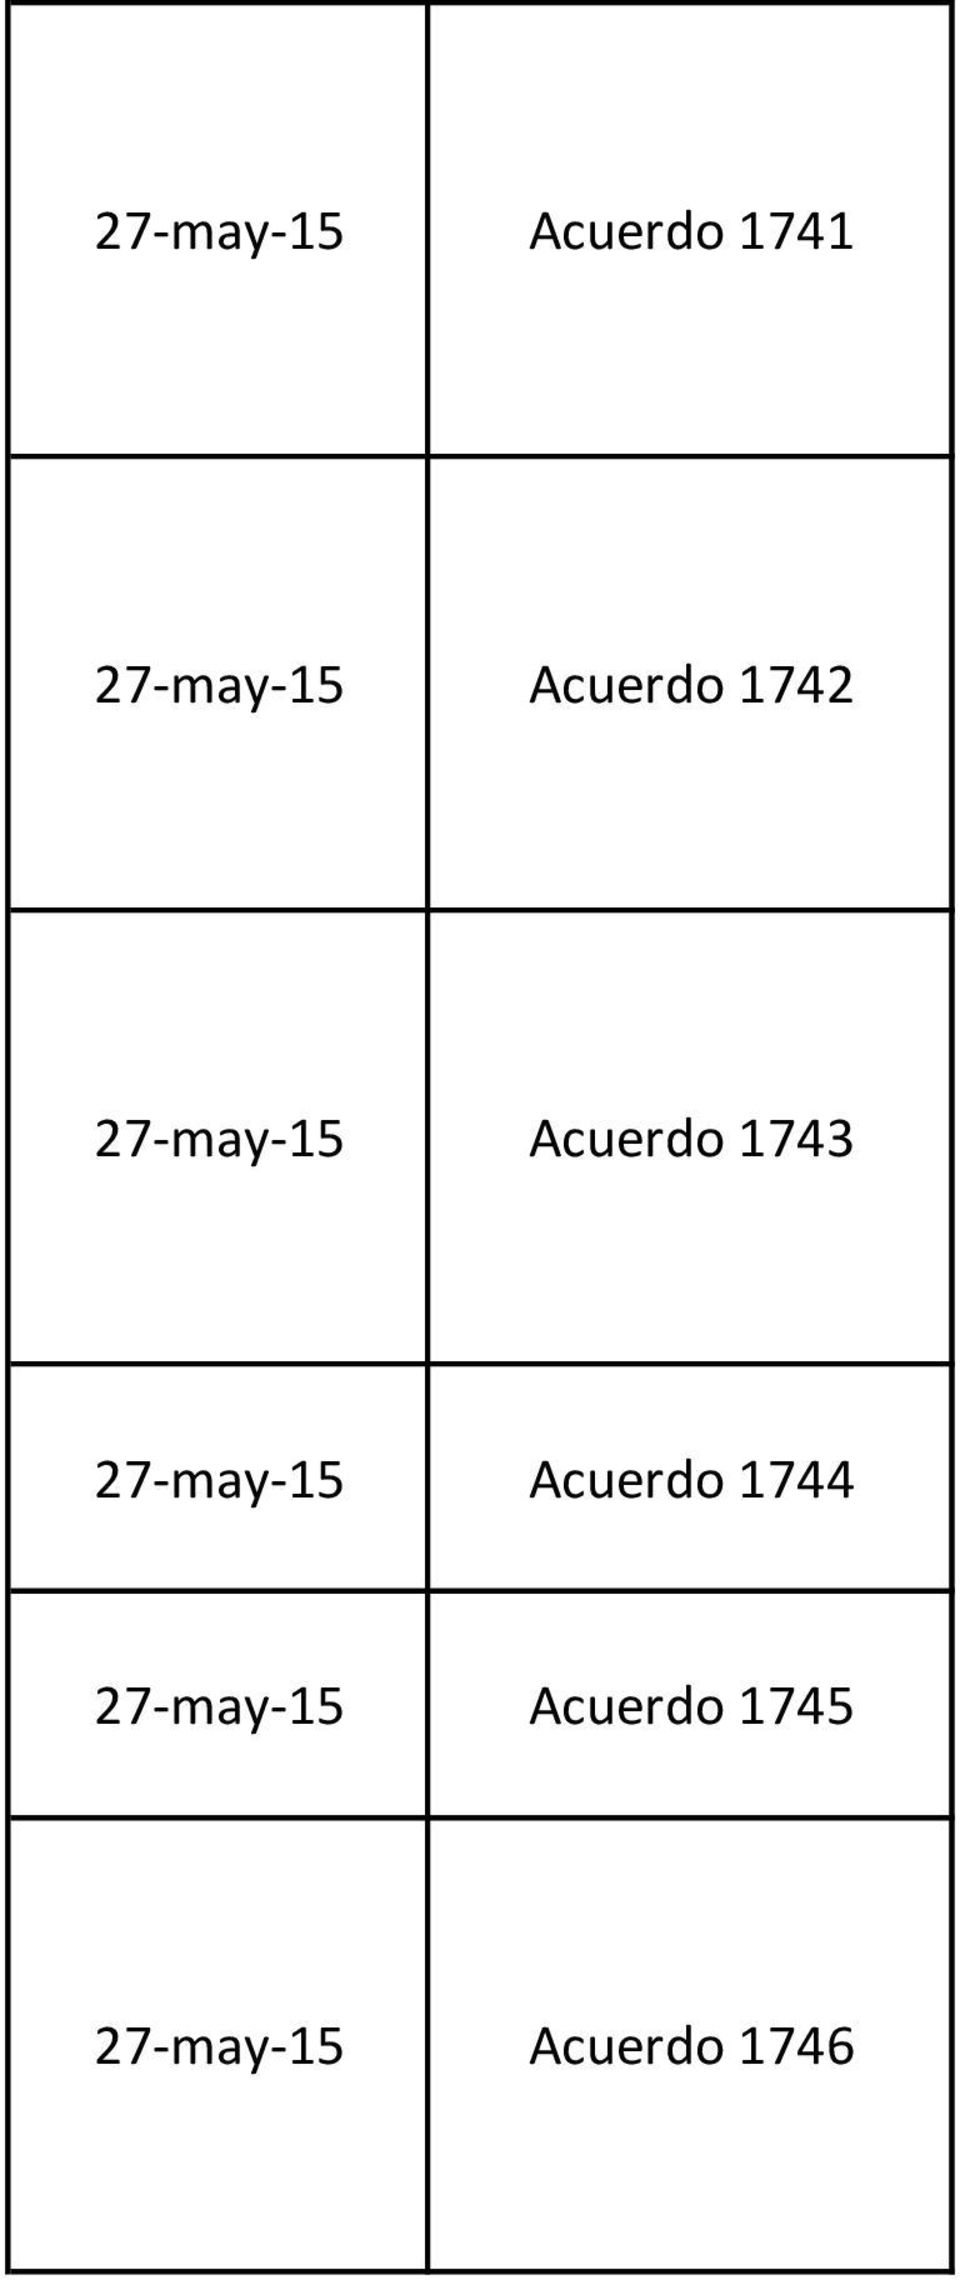 27-may-15 1743